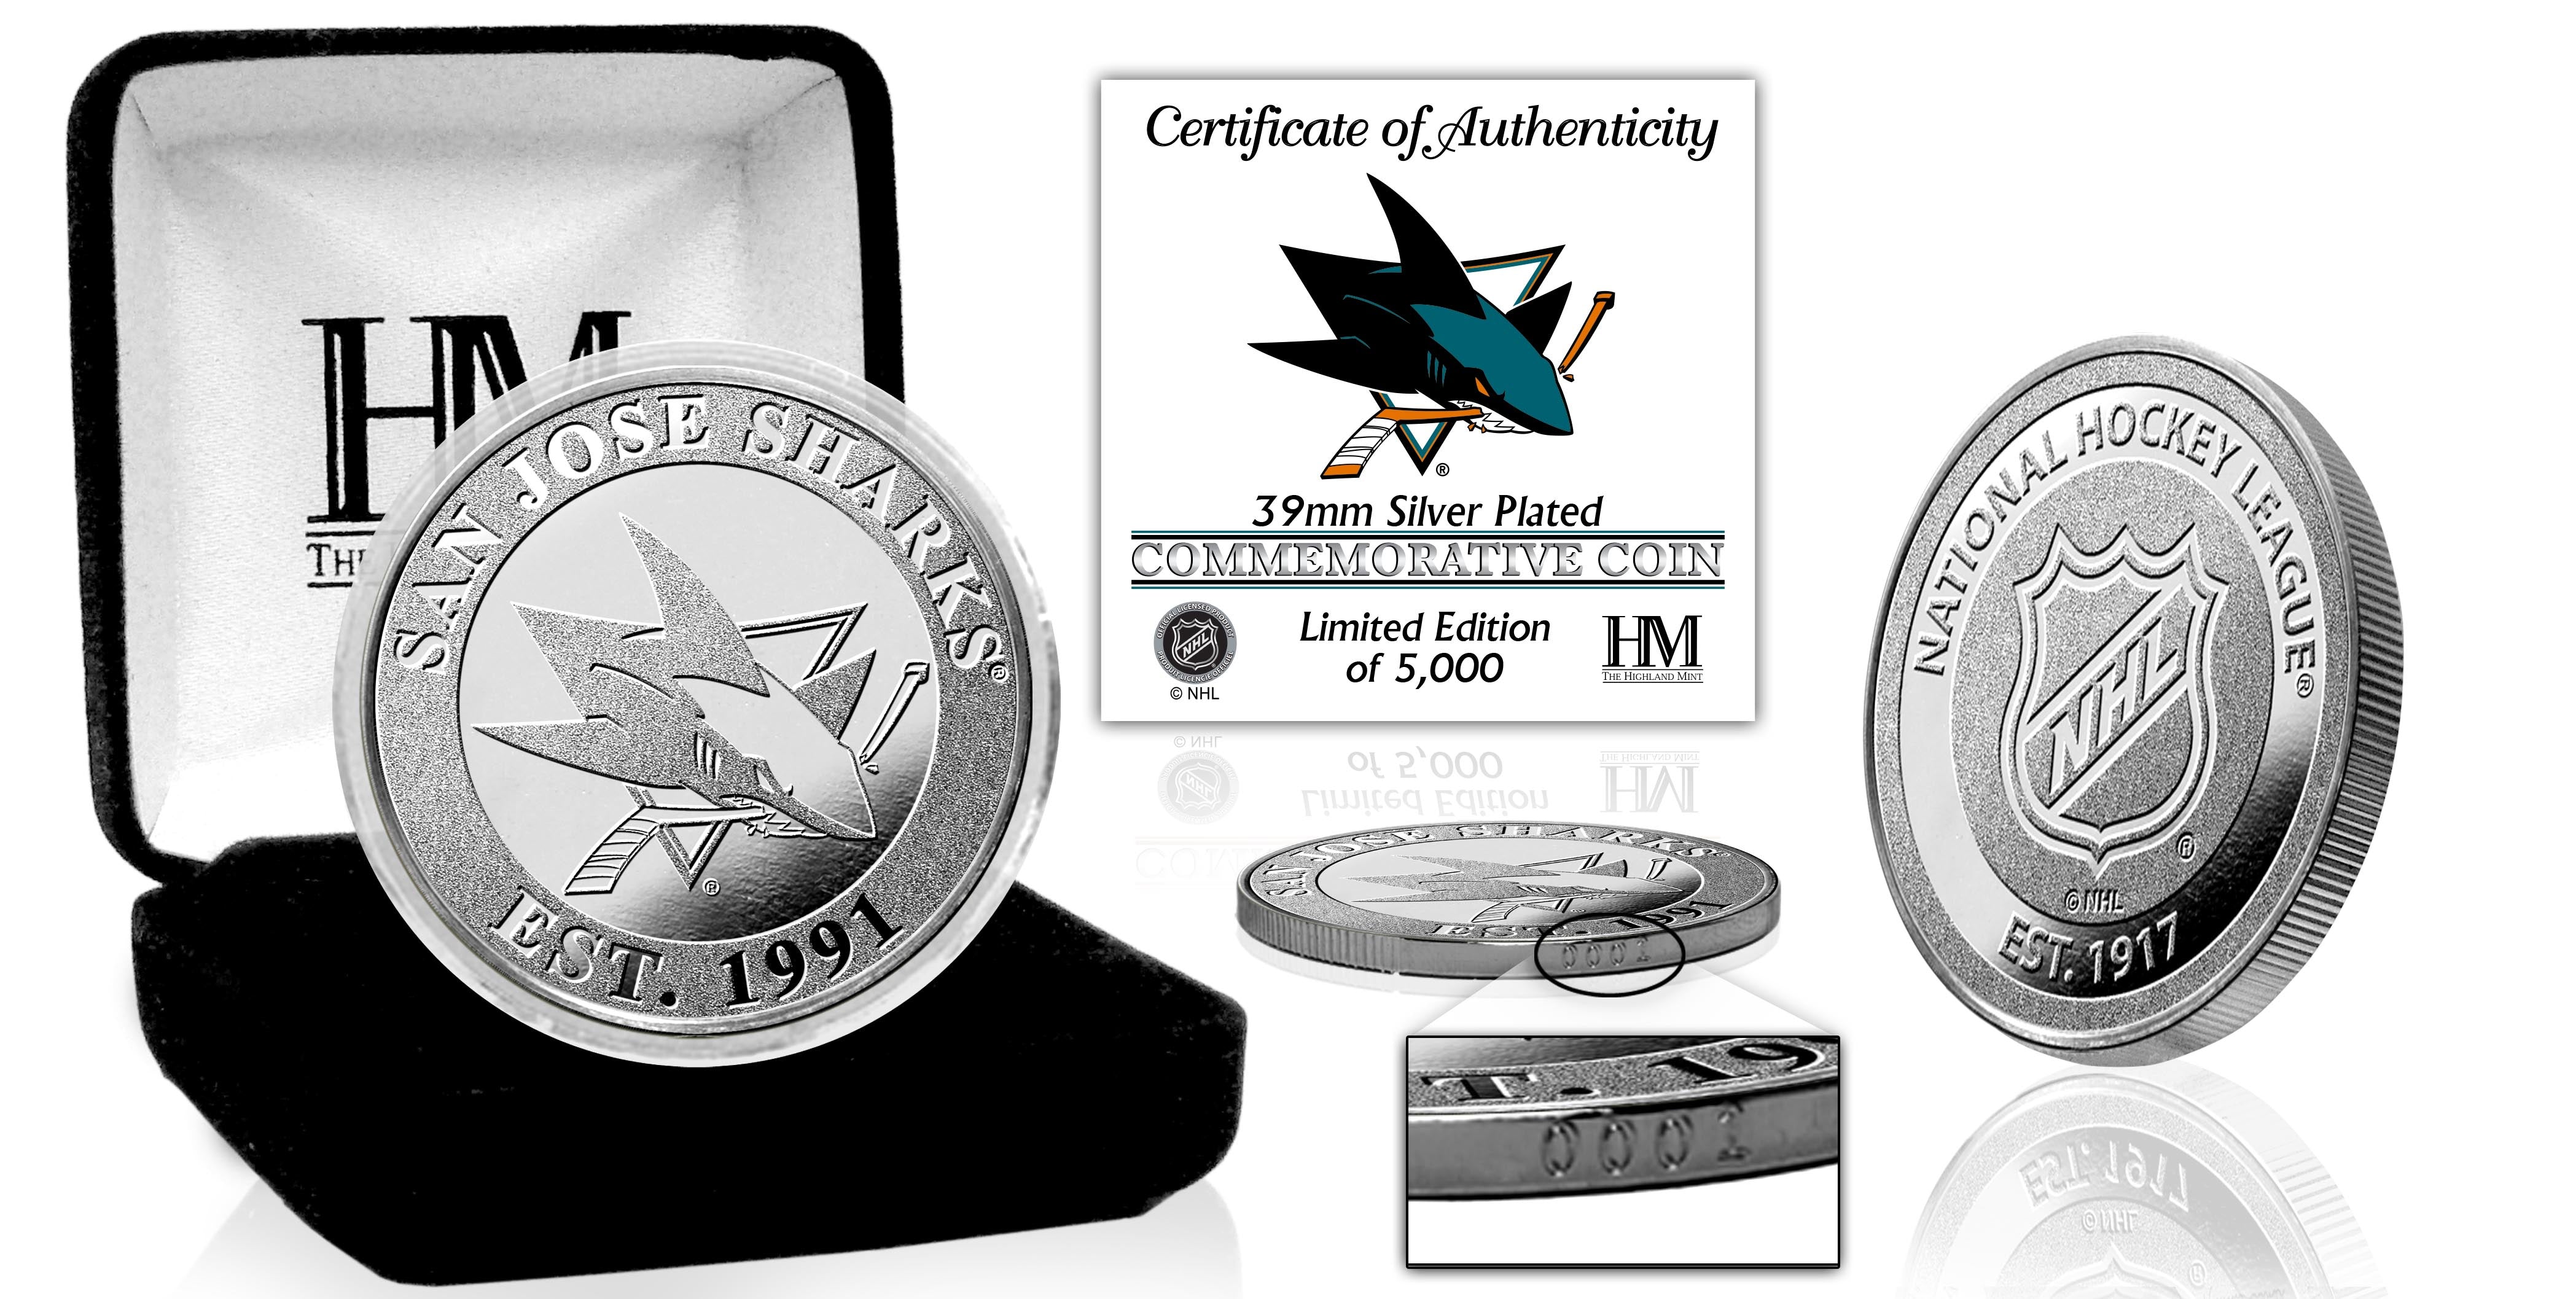 San Jose Sharks Silver Mint Coin